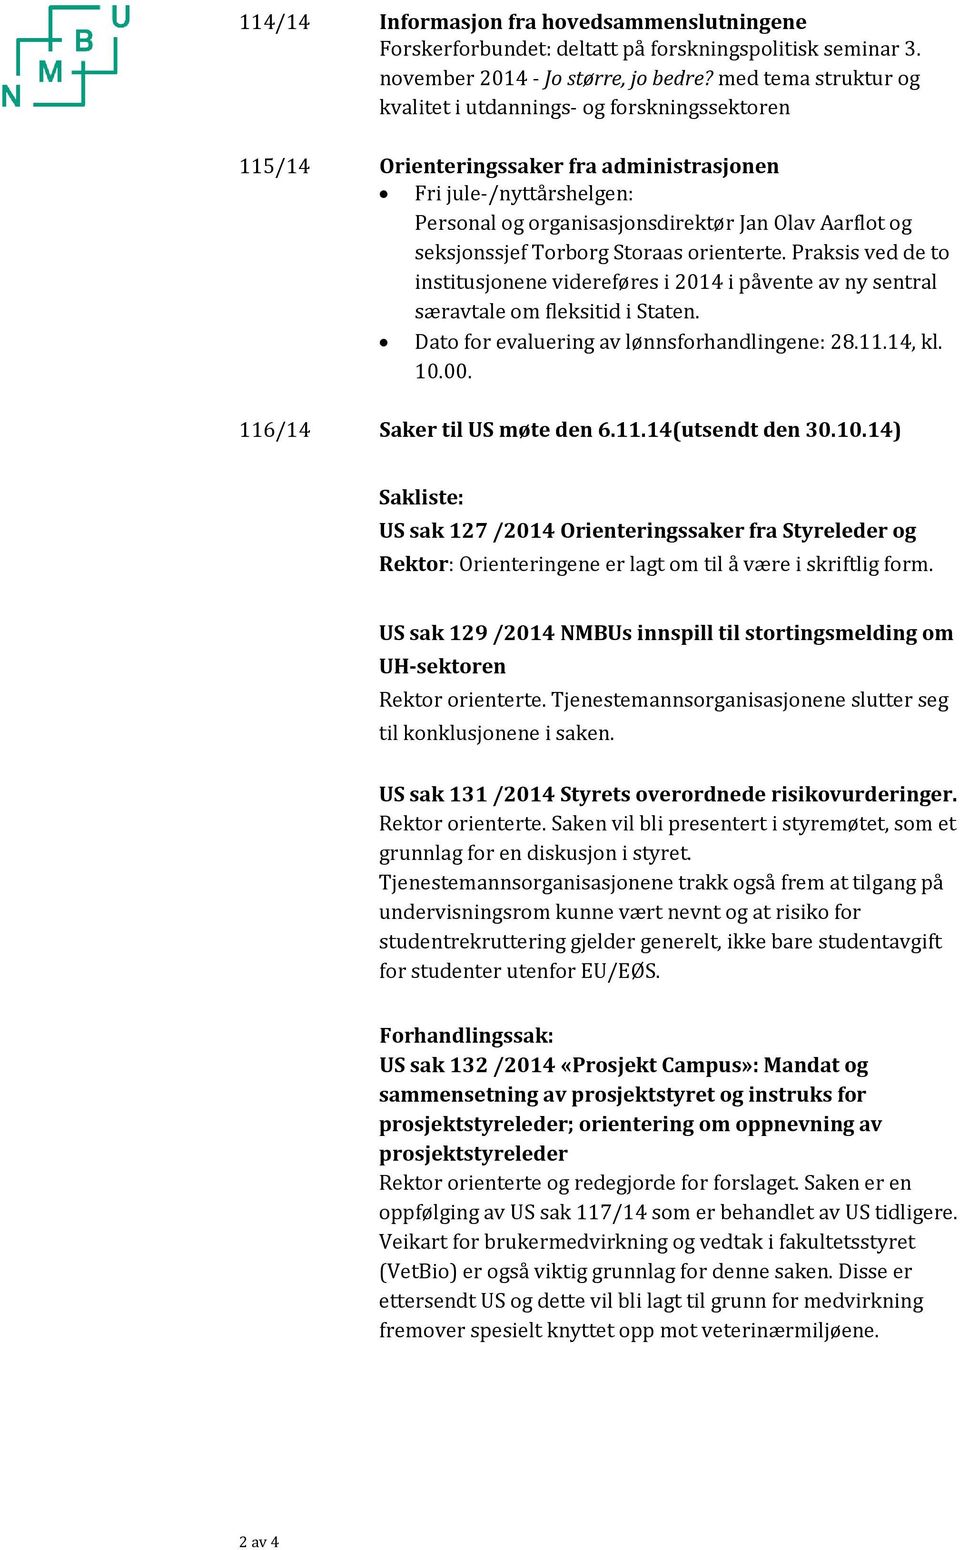 seksjonssjef Torborg Storaas orienterte. Praksis ved de to institusjonene videreføres i 2014 i påvente av ny sentral særavtale om fleksitid i Staten. Dato for evaluering av lønnsforhandlingene: 28.11.